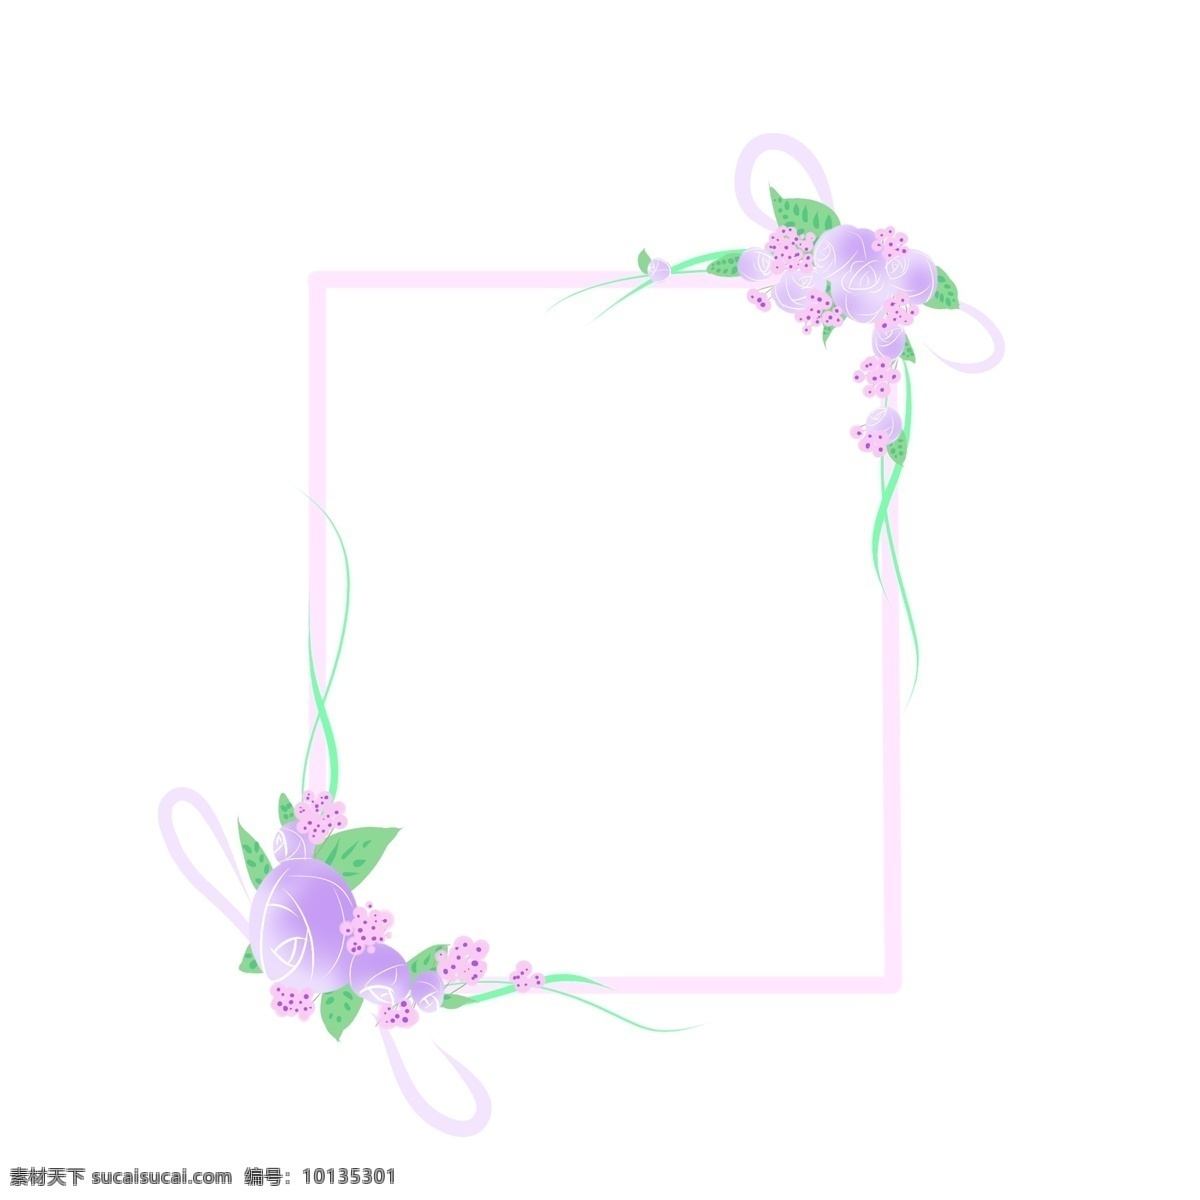 紫色 花朵 边框 插画 紫色的花朵 粉色的花朵 卡通边框 漂亮的边框 美丽的边框 边框插画 小物边框 漂亮的花朵